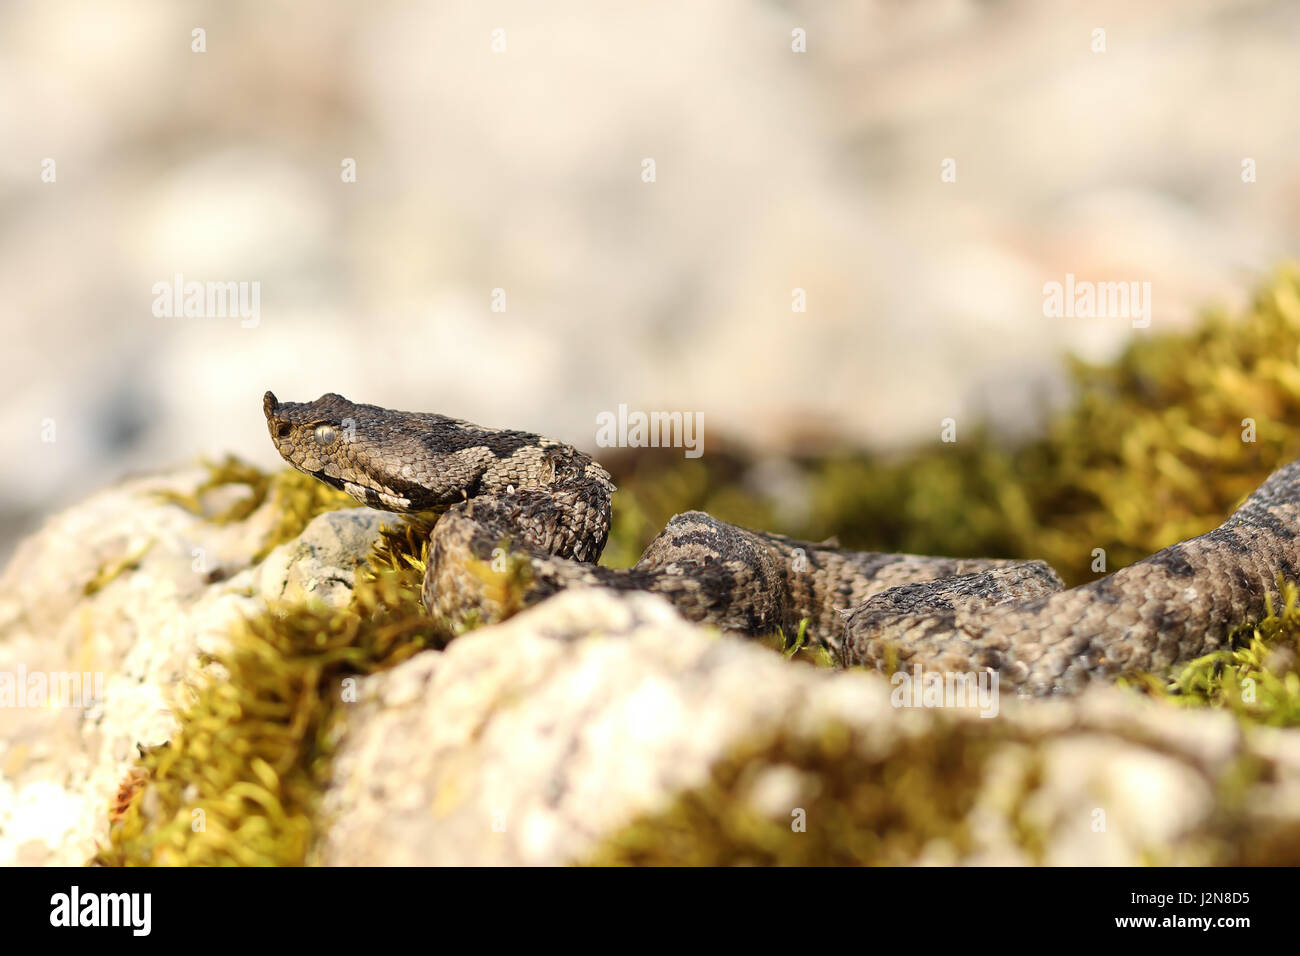 Gran serpiente venenosa europea basking en hábitat natural ( la nariz, víbora cornuda Vipera ammodytes, una de las más peligrosas serpientes en Europa ) Foto de stock